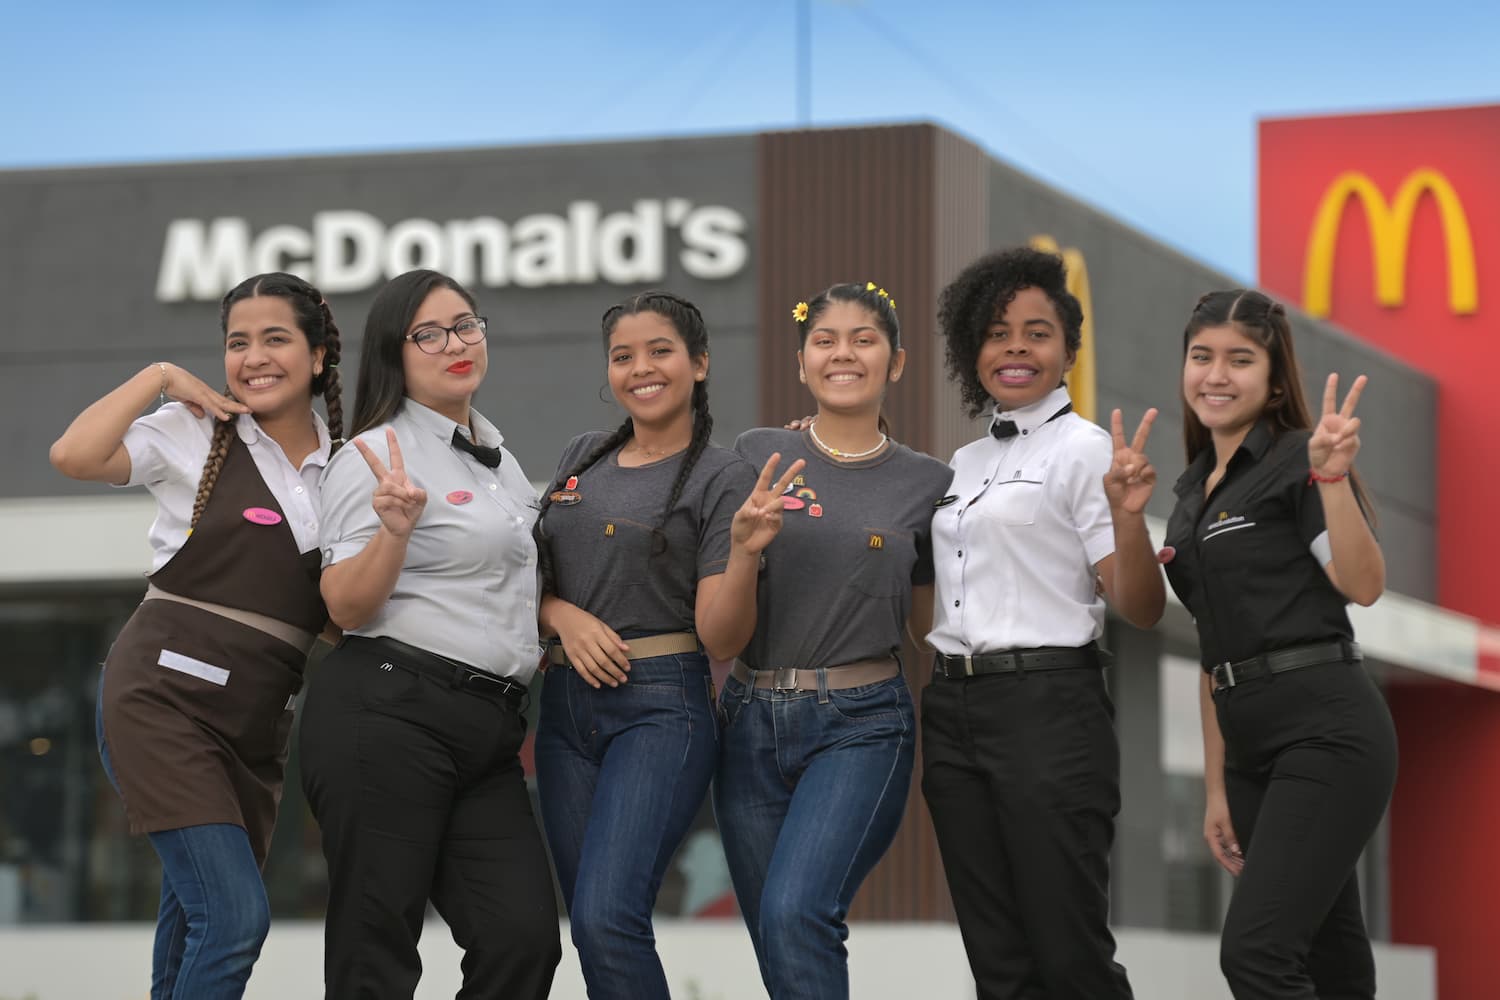 Arcos Dorados Ecuador (McDonald’s Ecuador)